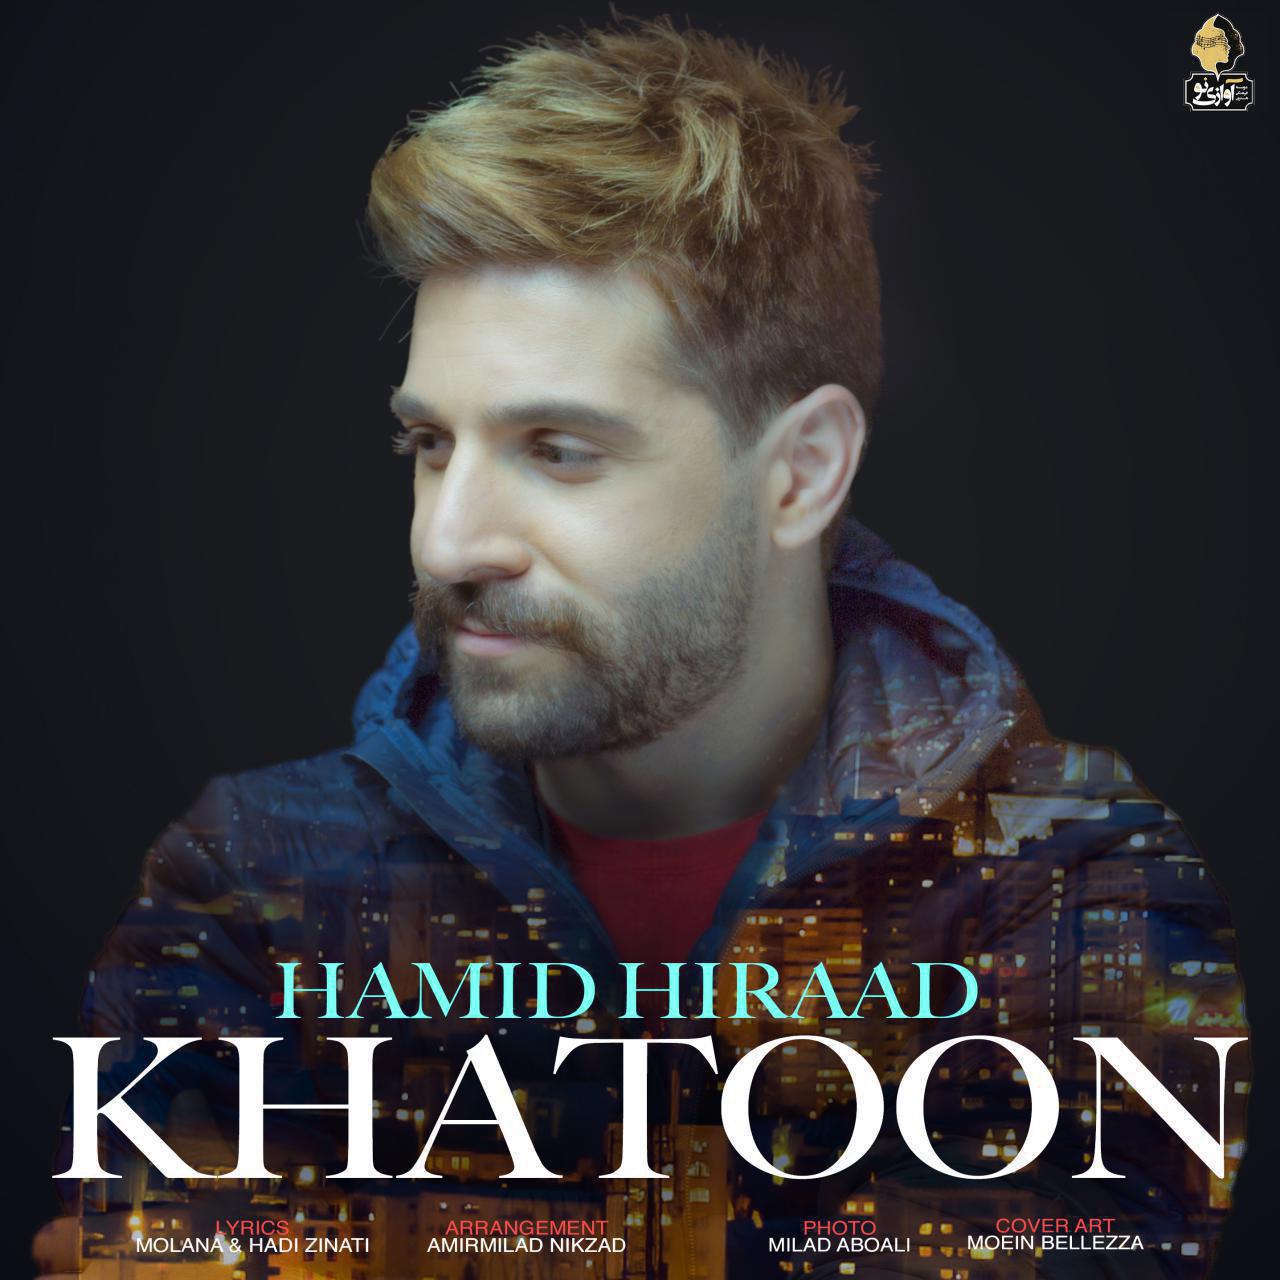 Hamid Hiraad - Khatoon